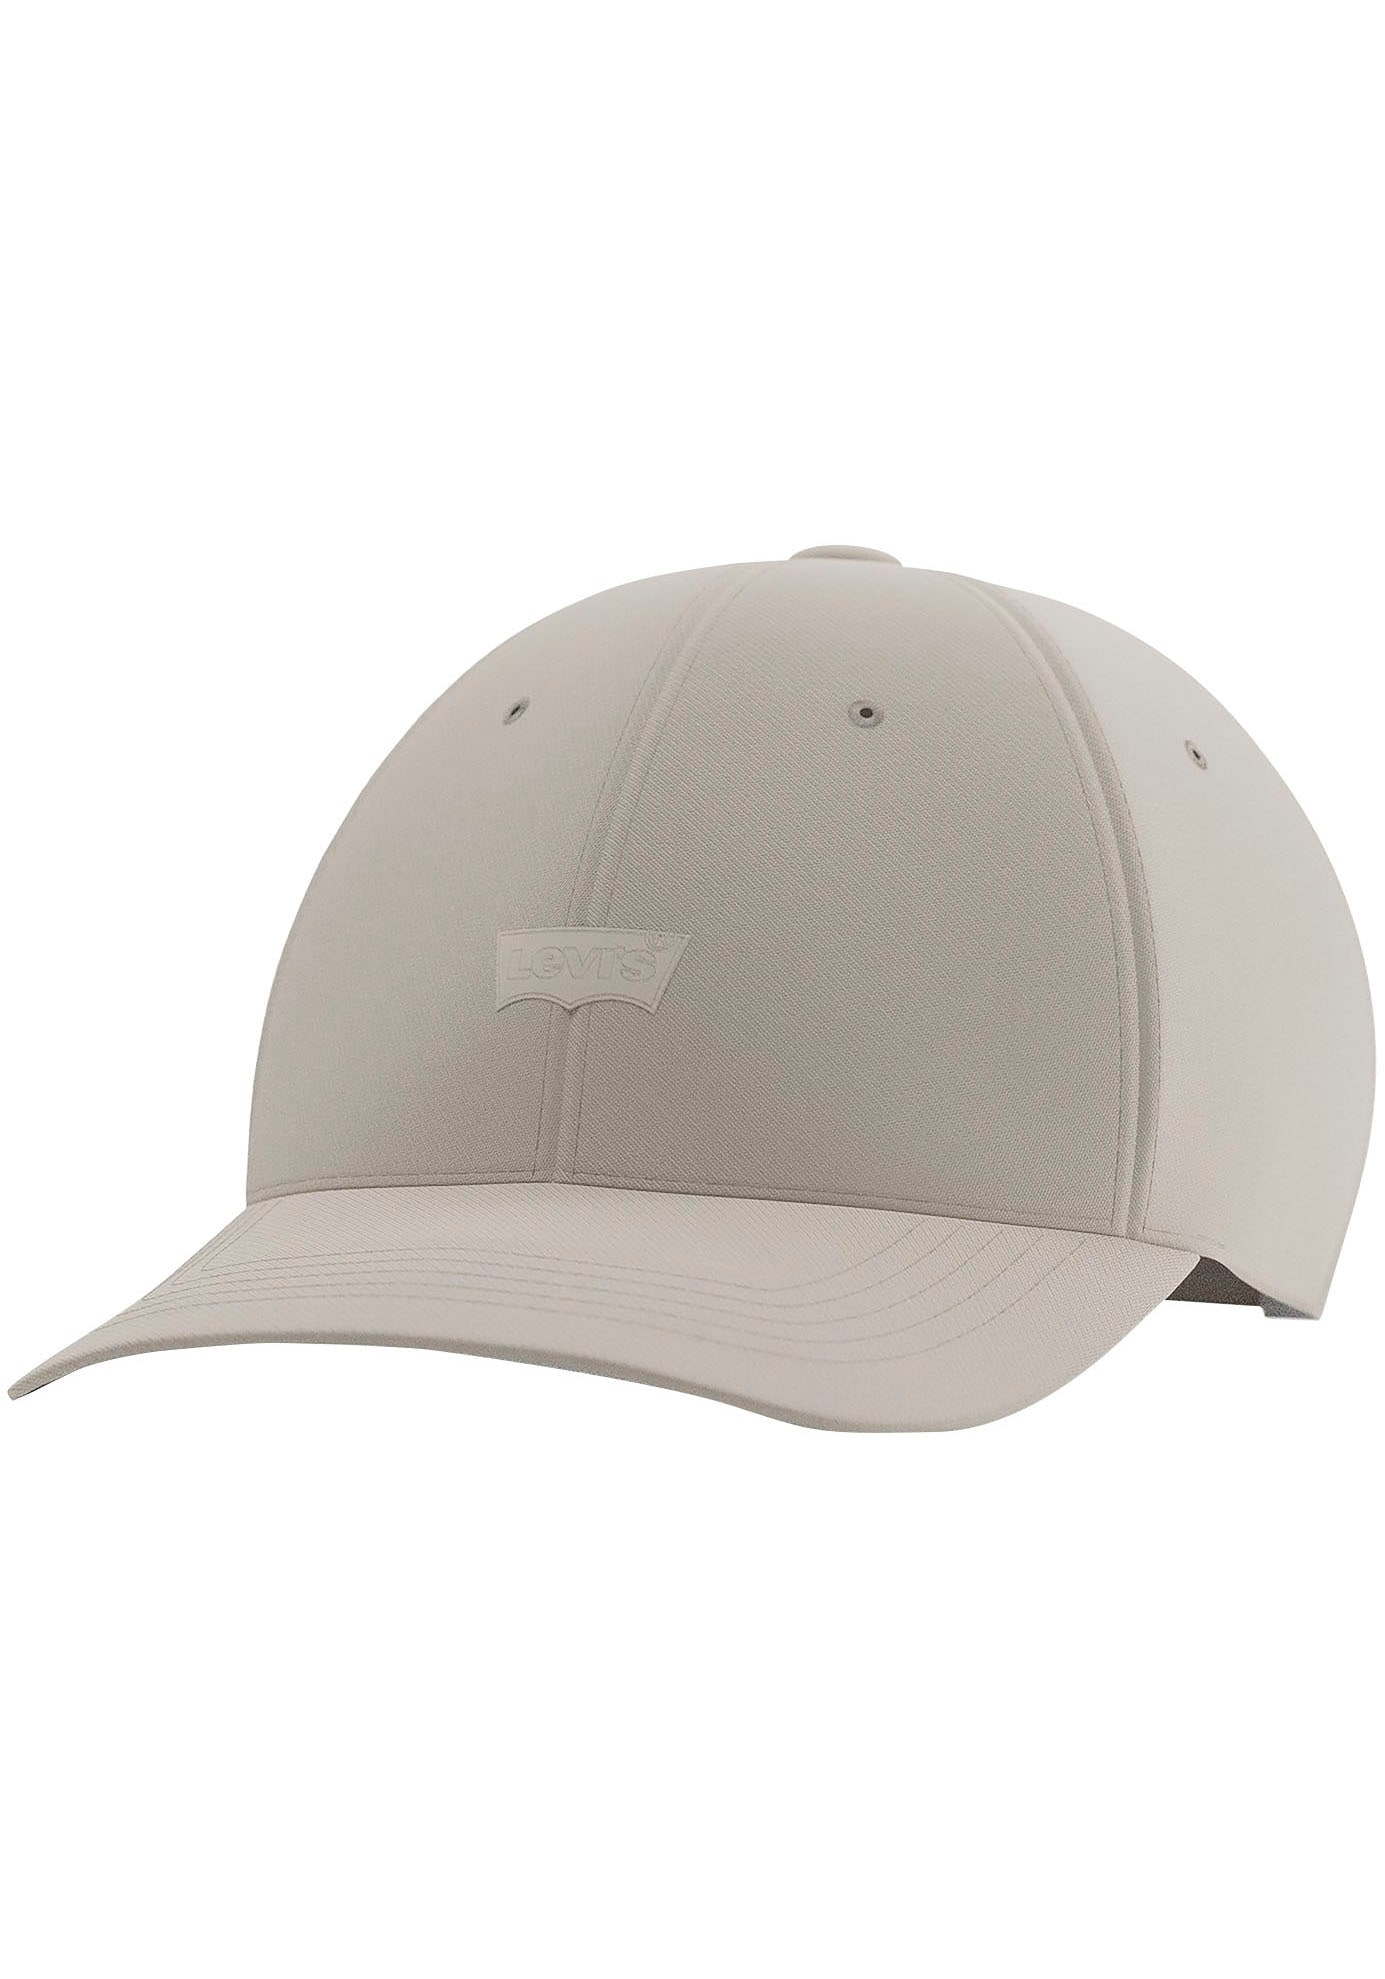 Levi's® Baseball Cap »Housemark Flexfit« von Levi's®